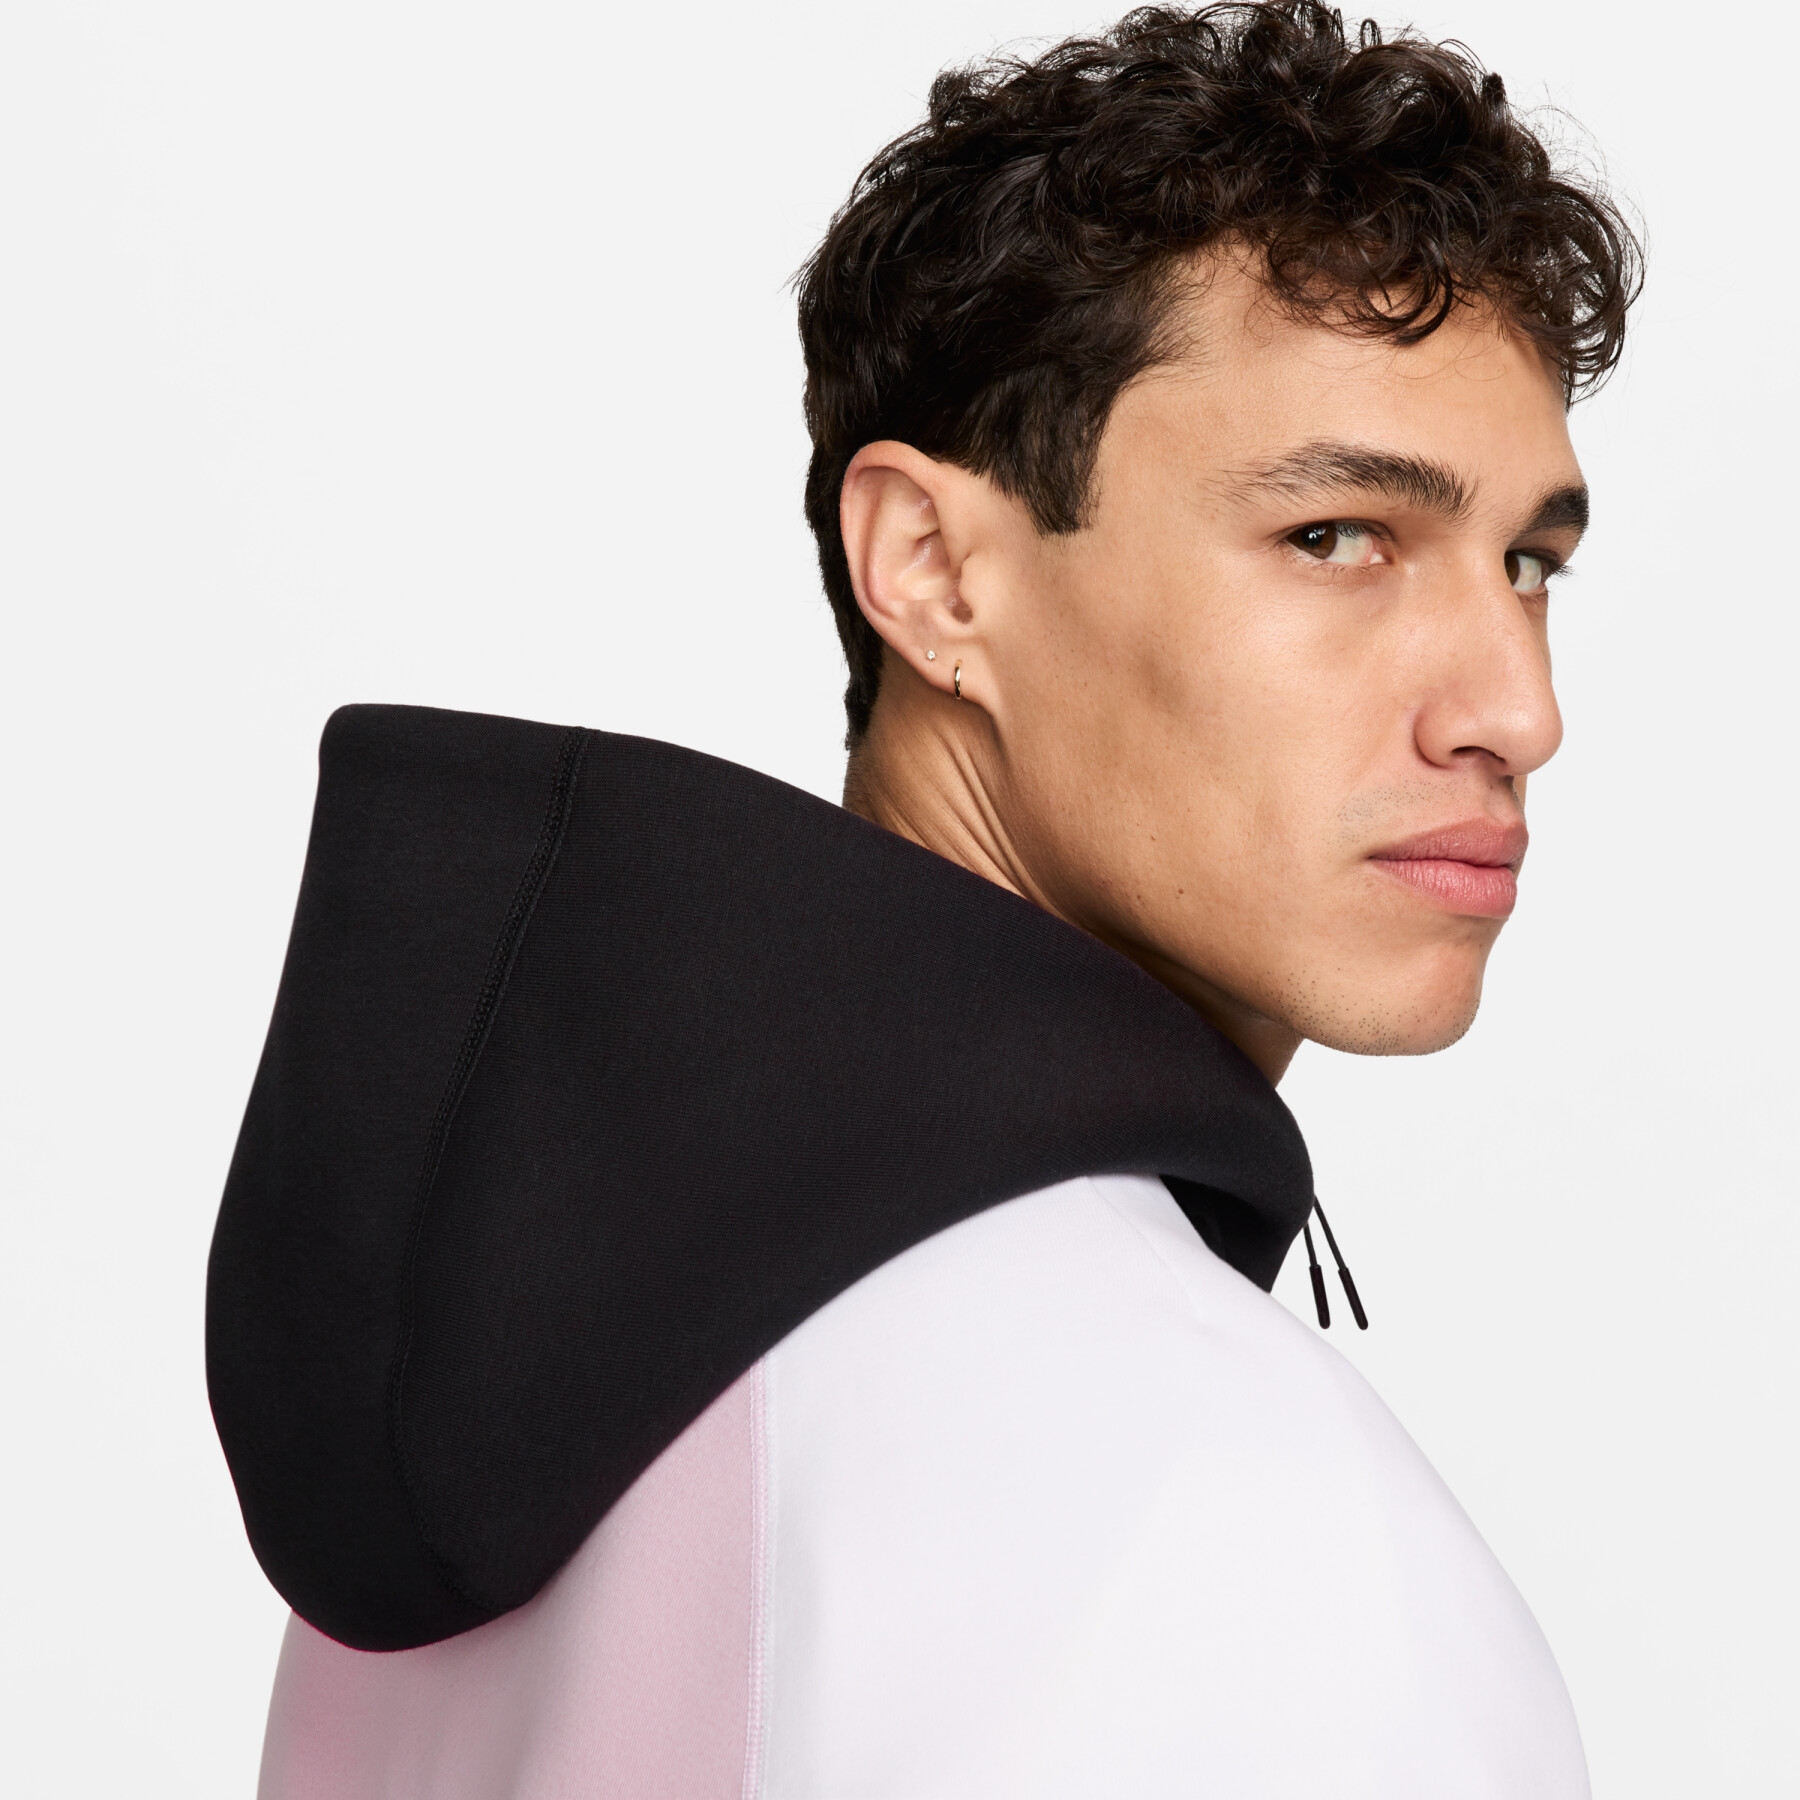 Zip-up hoodie Nike Tech Fleece